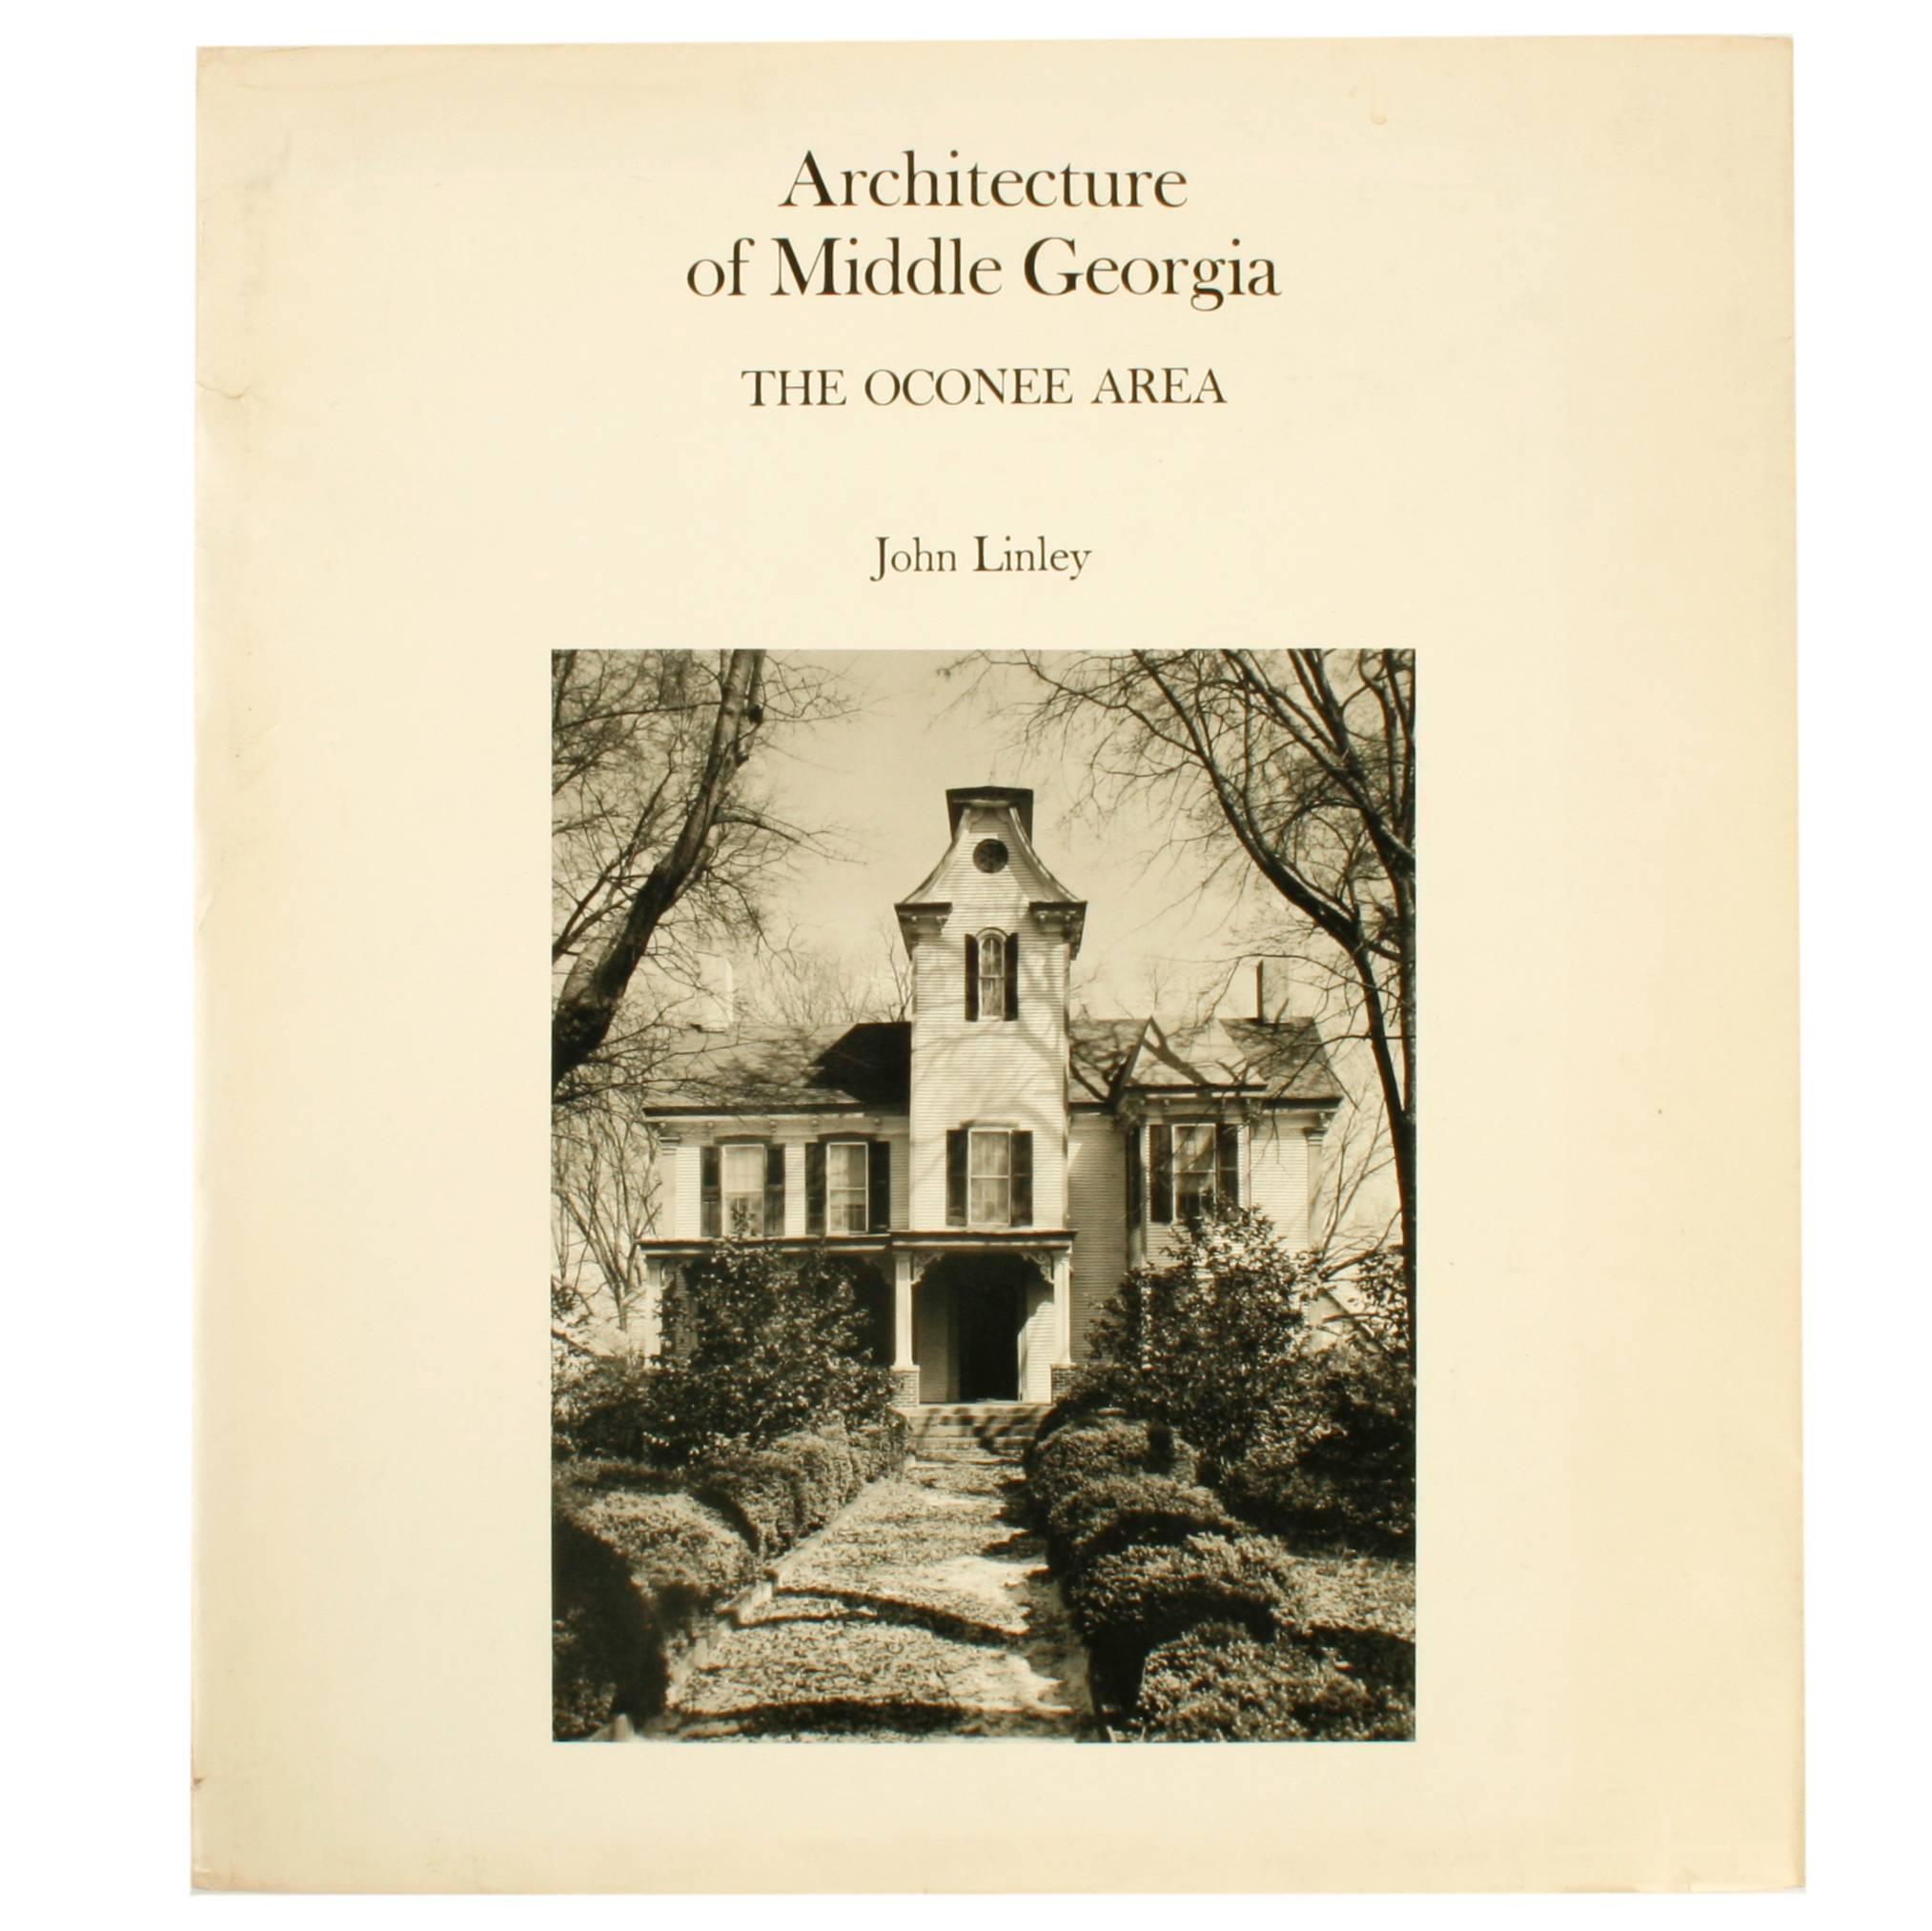 Architektonische Architektur des Mittleren Georgian, The Oconee Area, von John Linley, 1st Ed